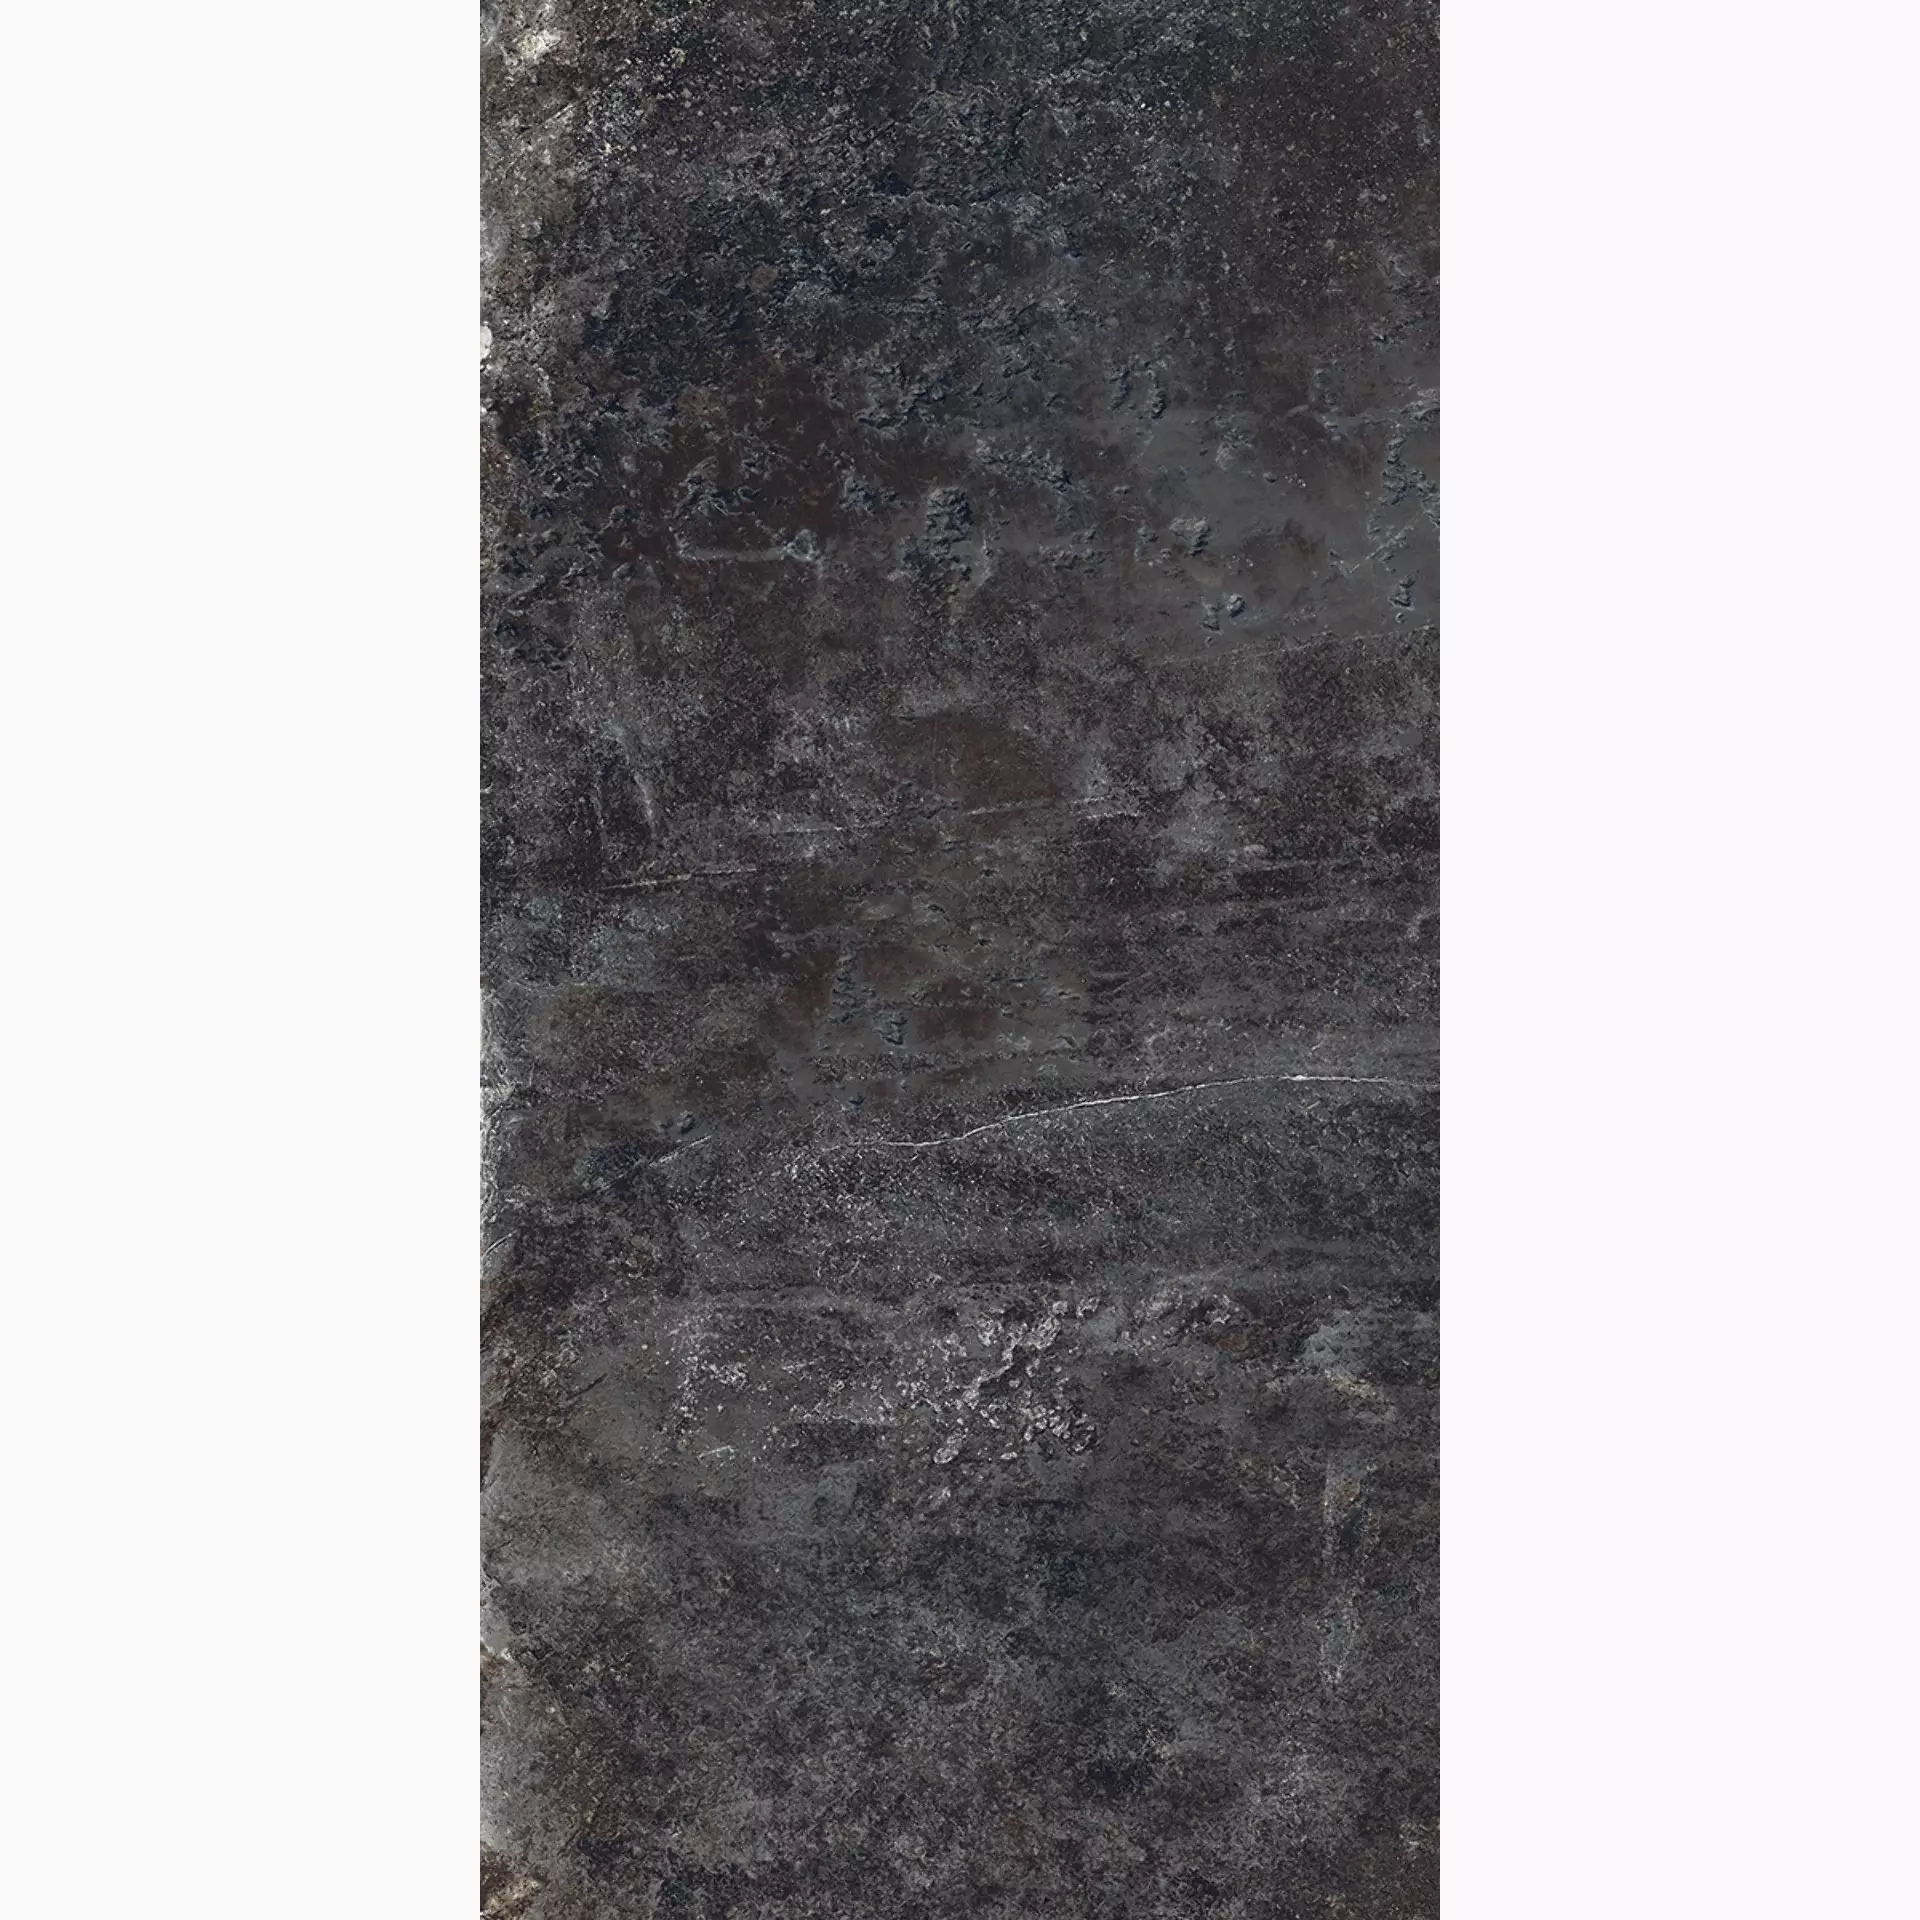 Rondine Ardesie Dark Naturale J87001 30x60cm rectified 9,5mm